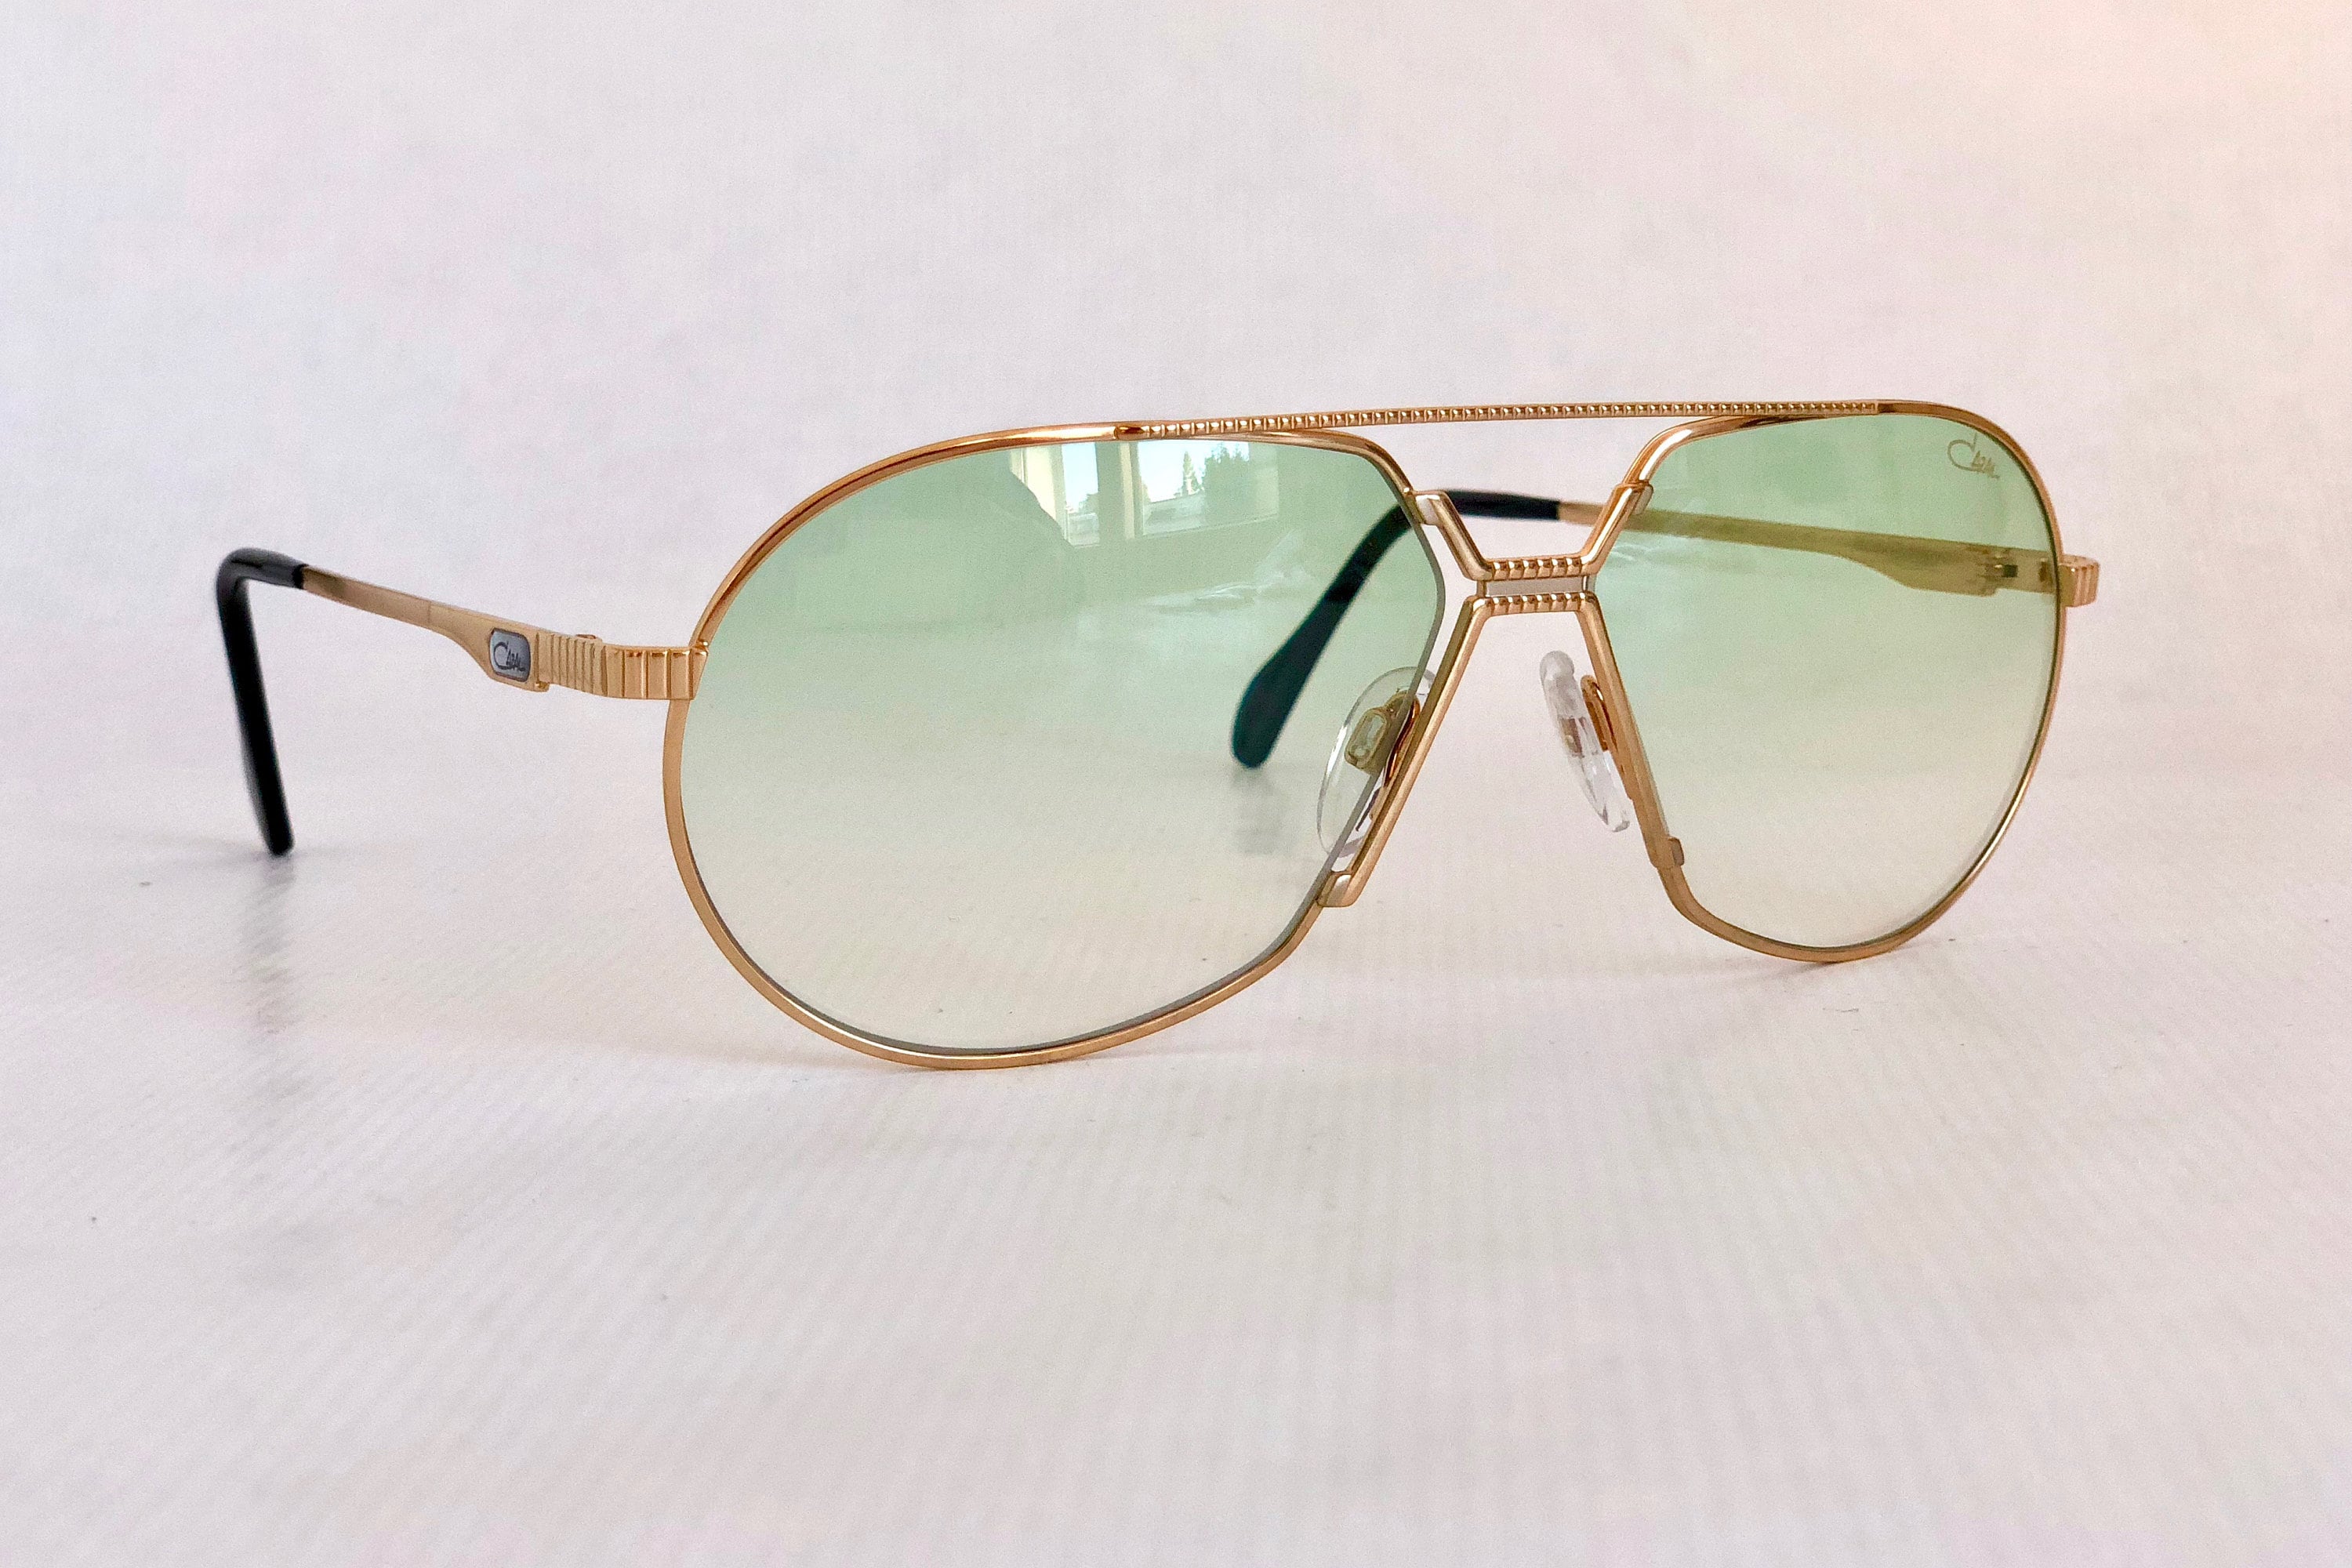 Cazal 968 Flashbacks Limited Edition Sunglasses - Full Set with 5 ...